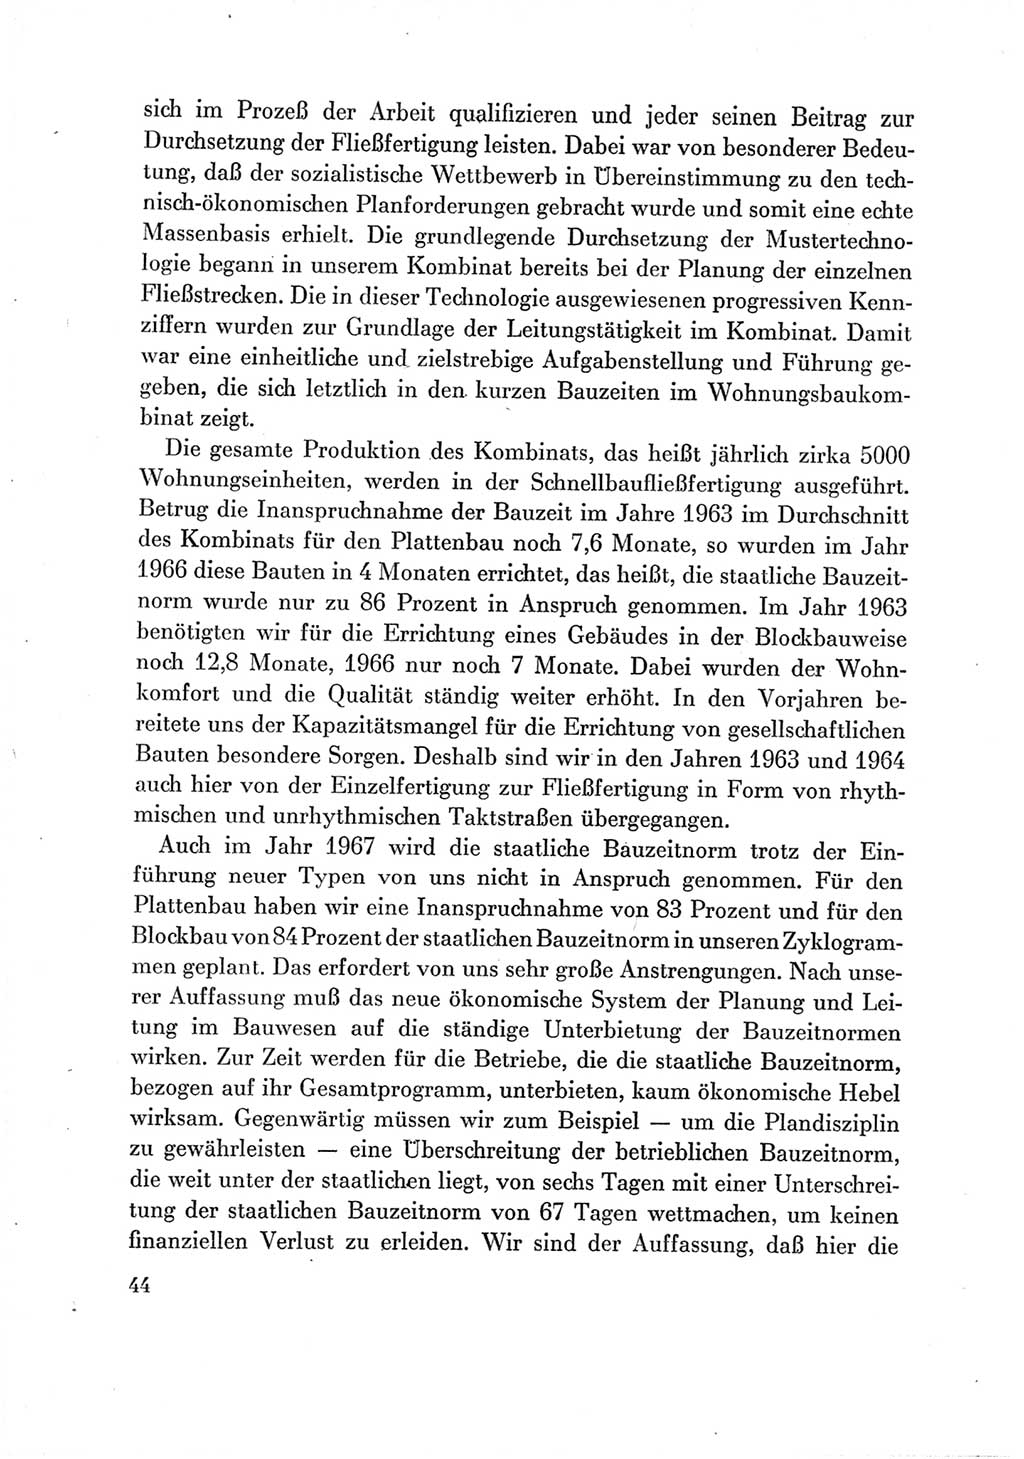 Protokoll der Verhandlungen des Ⅶ. Parteitages der Sozialistischen Einheitspartei Deutschlands (SED) [Deutsche Demokratische Republik (DDR)] 1967, Band Ⅲ, Seite 44 (Prot. Verh. Ⅶ. PT SED DDR 1967, Bd. Ⅲ, S. 44)